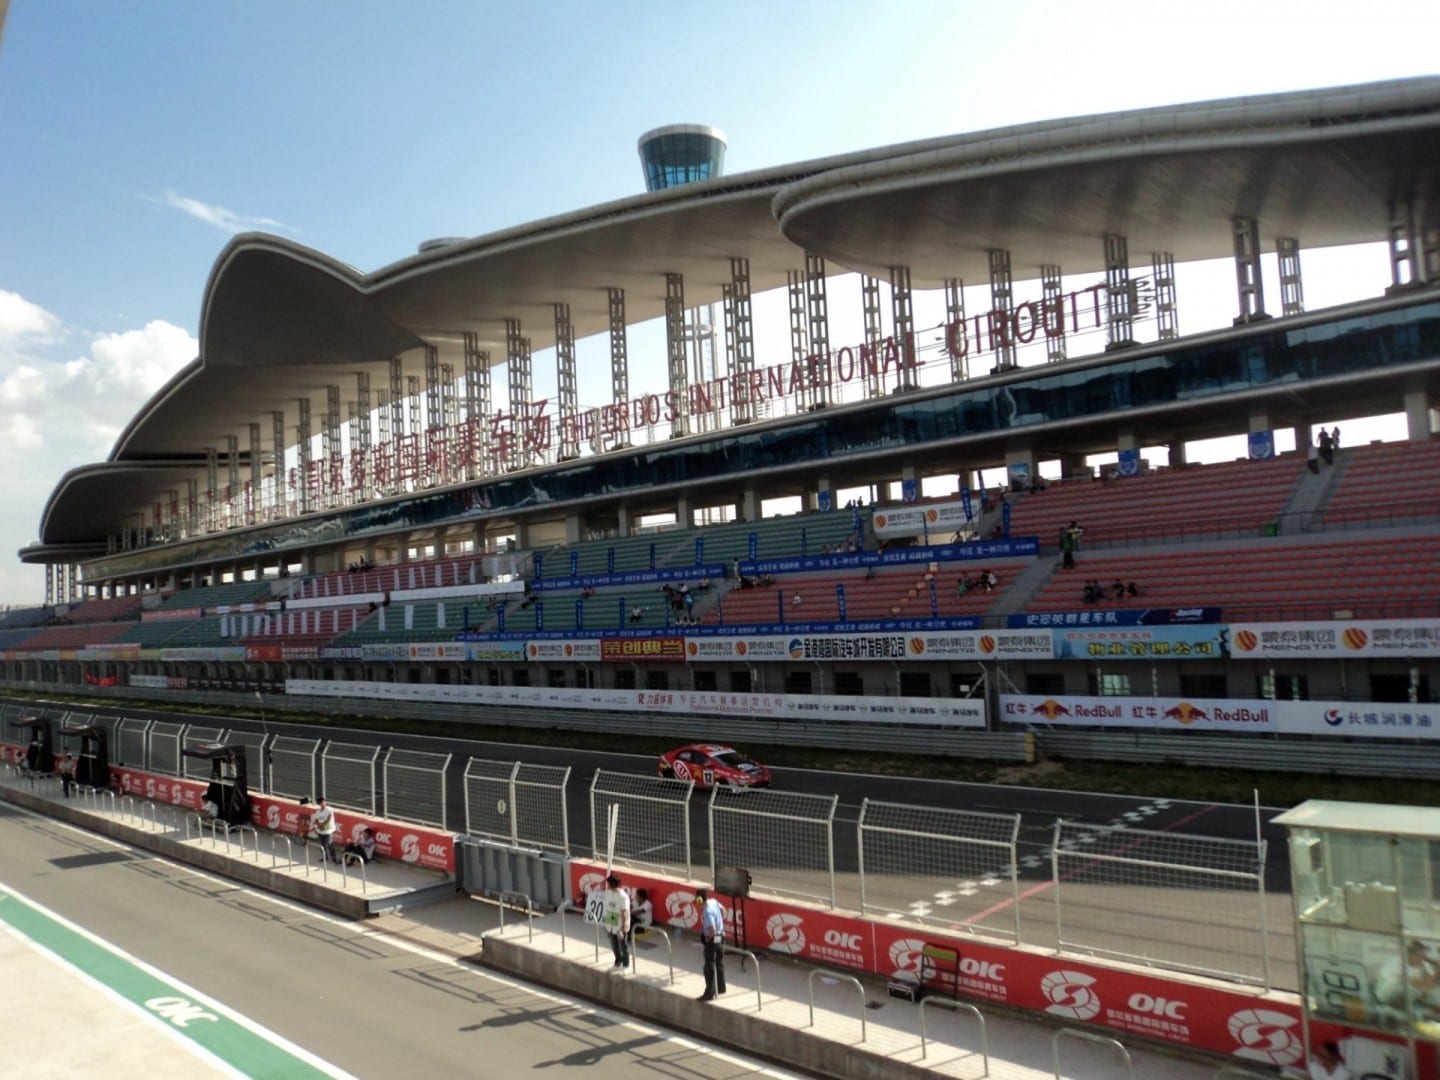 El Circuito Internacional de Ordos es una instalación de deportes de motor con una pista construida a semejanza de un caballo Ordos China